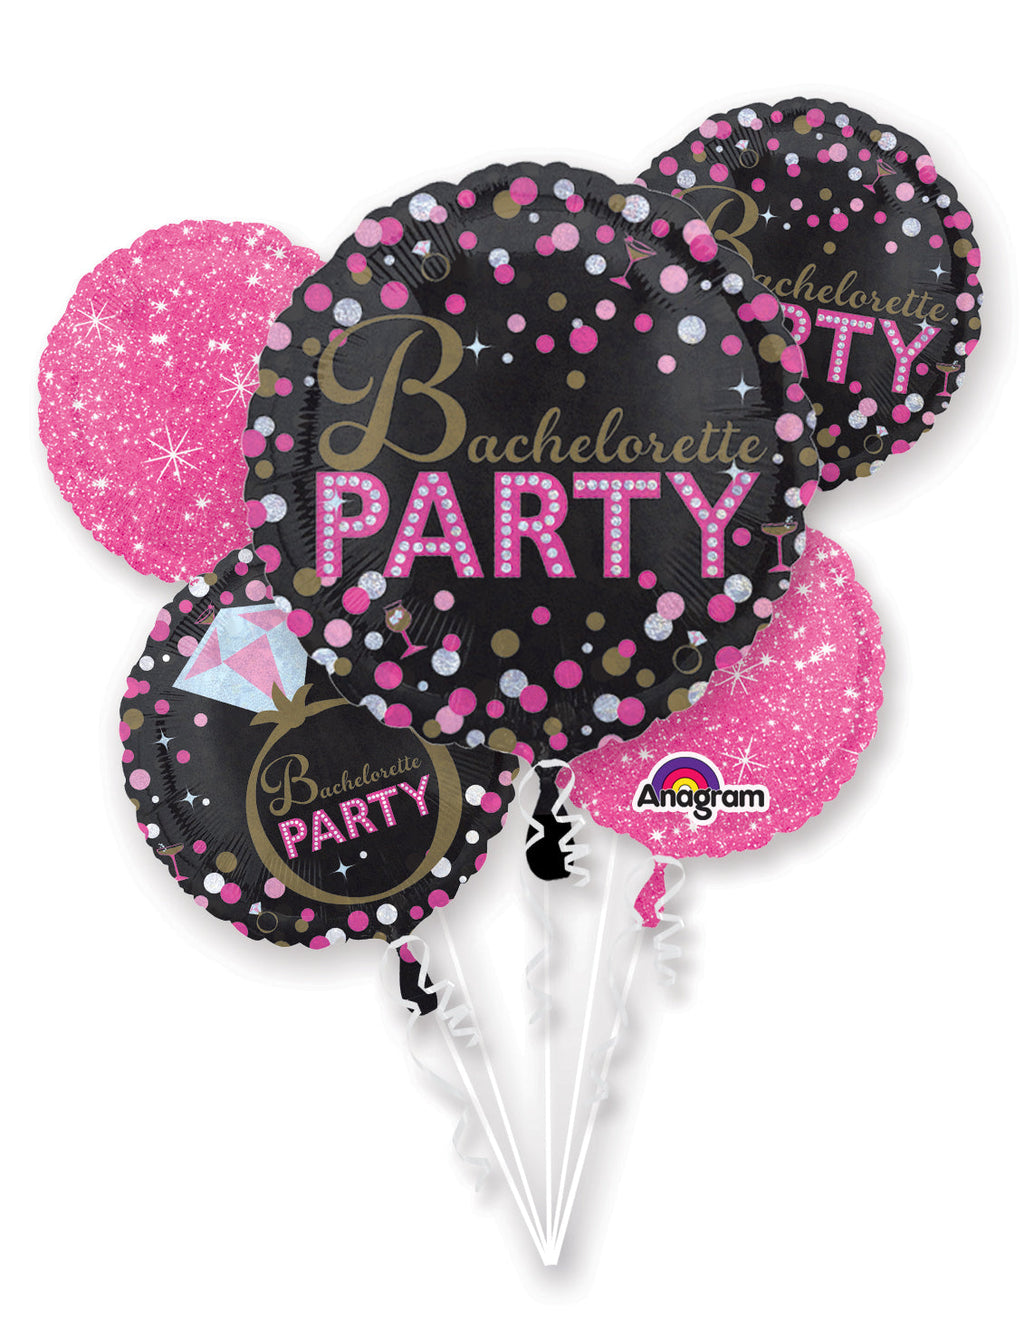 Bachelorette Party Balloon Bouquet